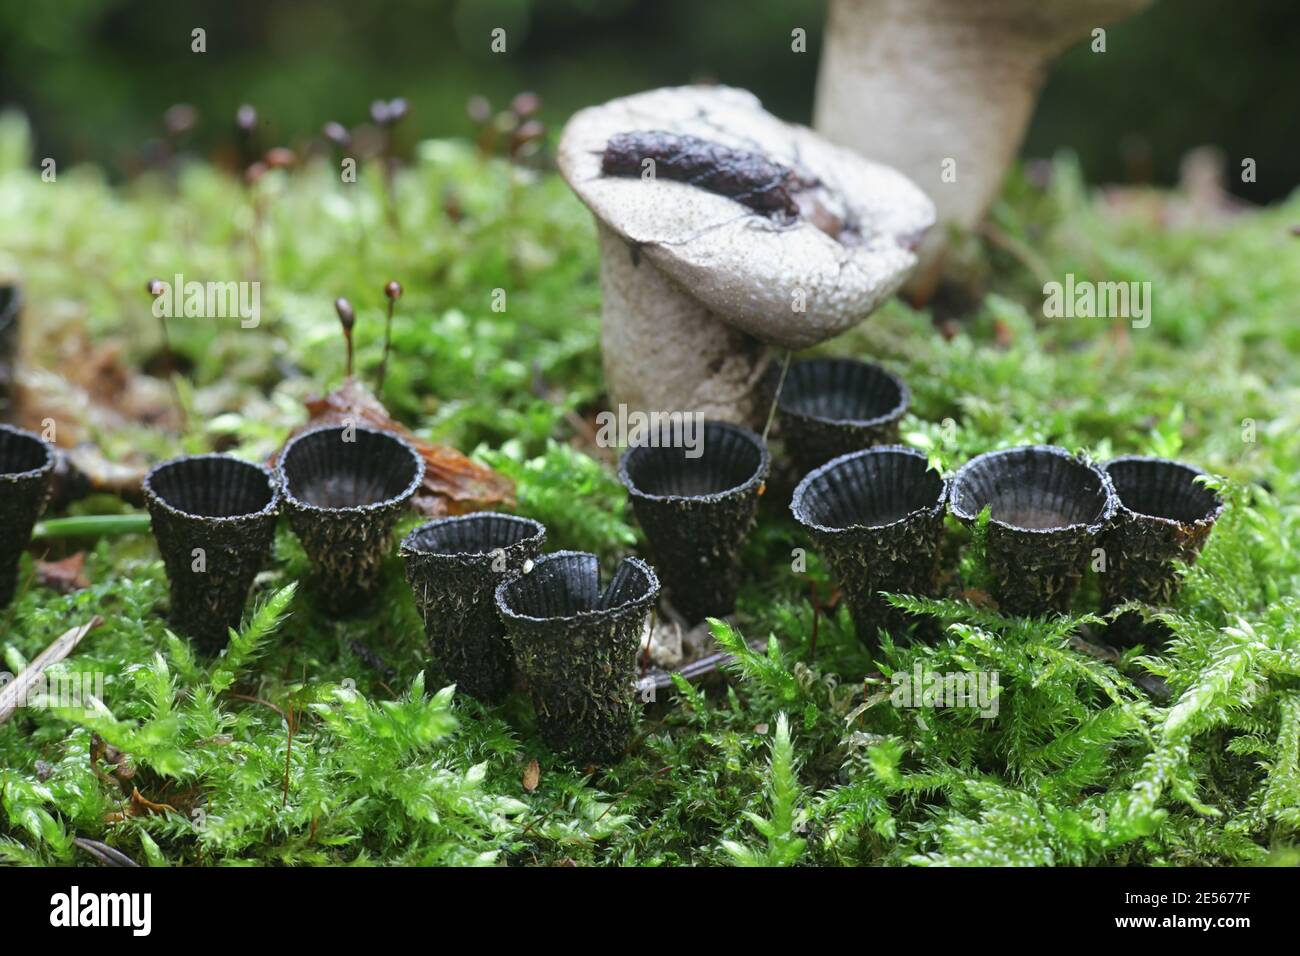 Cyathus striatus, connu sous le nom de champignon nichant des oiseaux, champignon sauvage de Finlande Banque D'Images